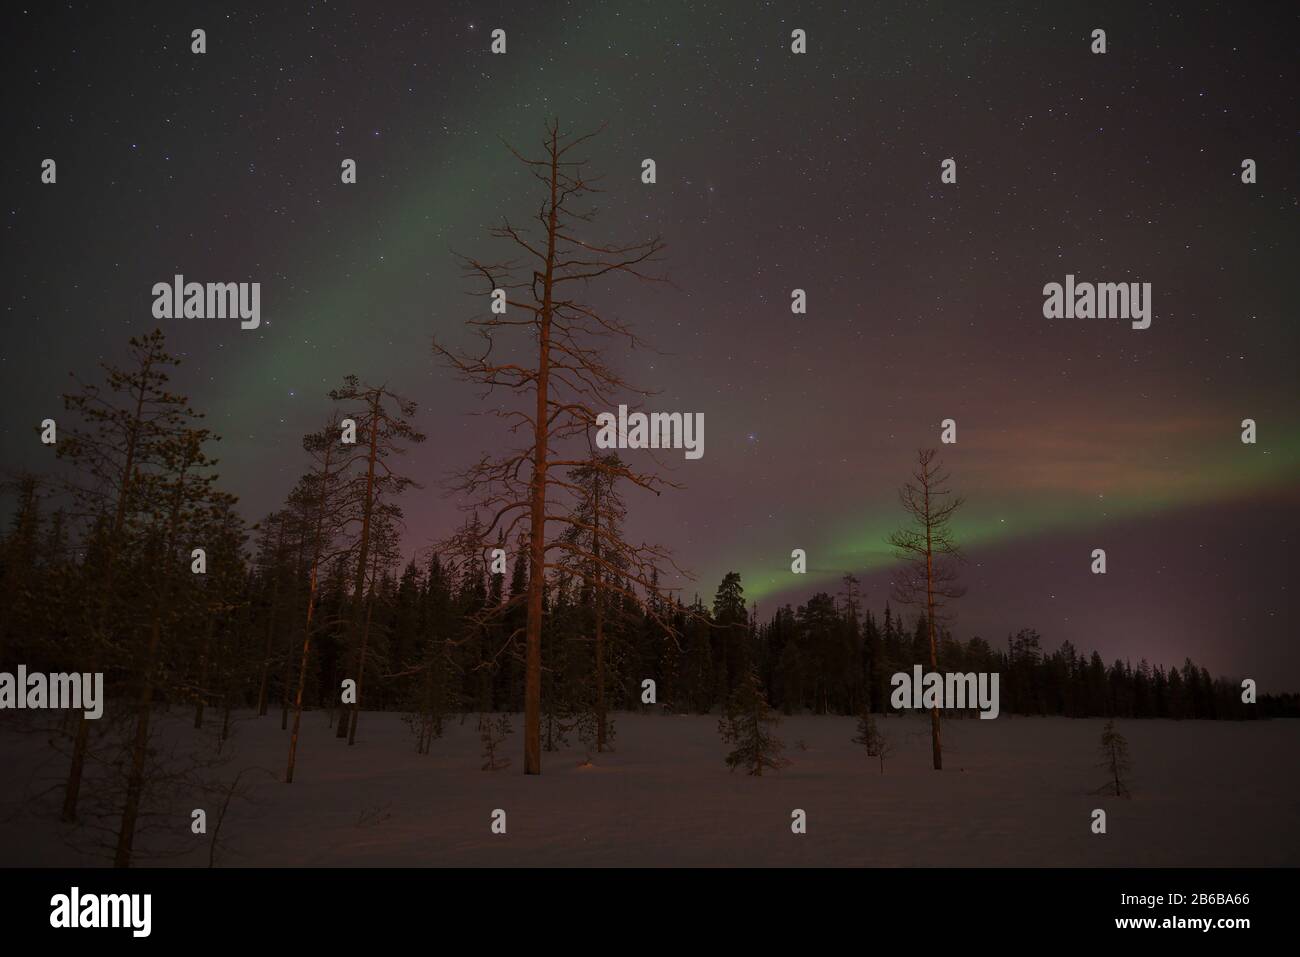 Magnifiques aurores boréales (aurores boréales) capturées à Luosto, Laponie, Finlande avec ciel clair et étoiles. Banque D'Images